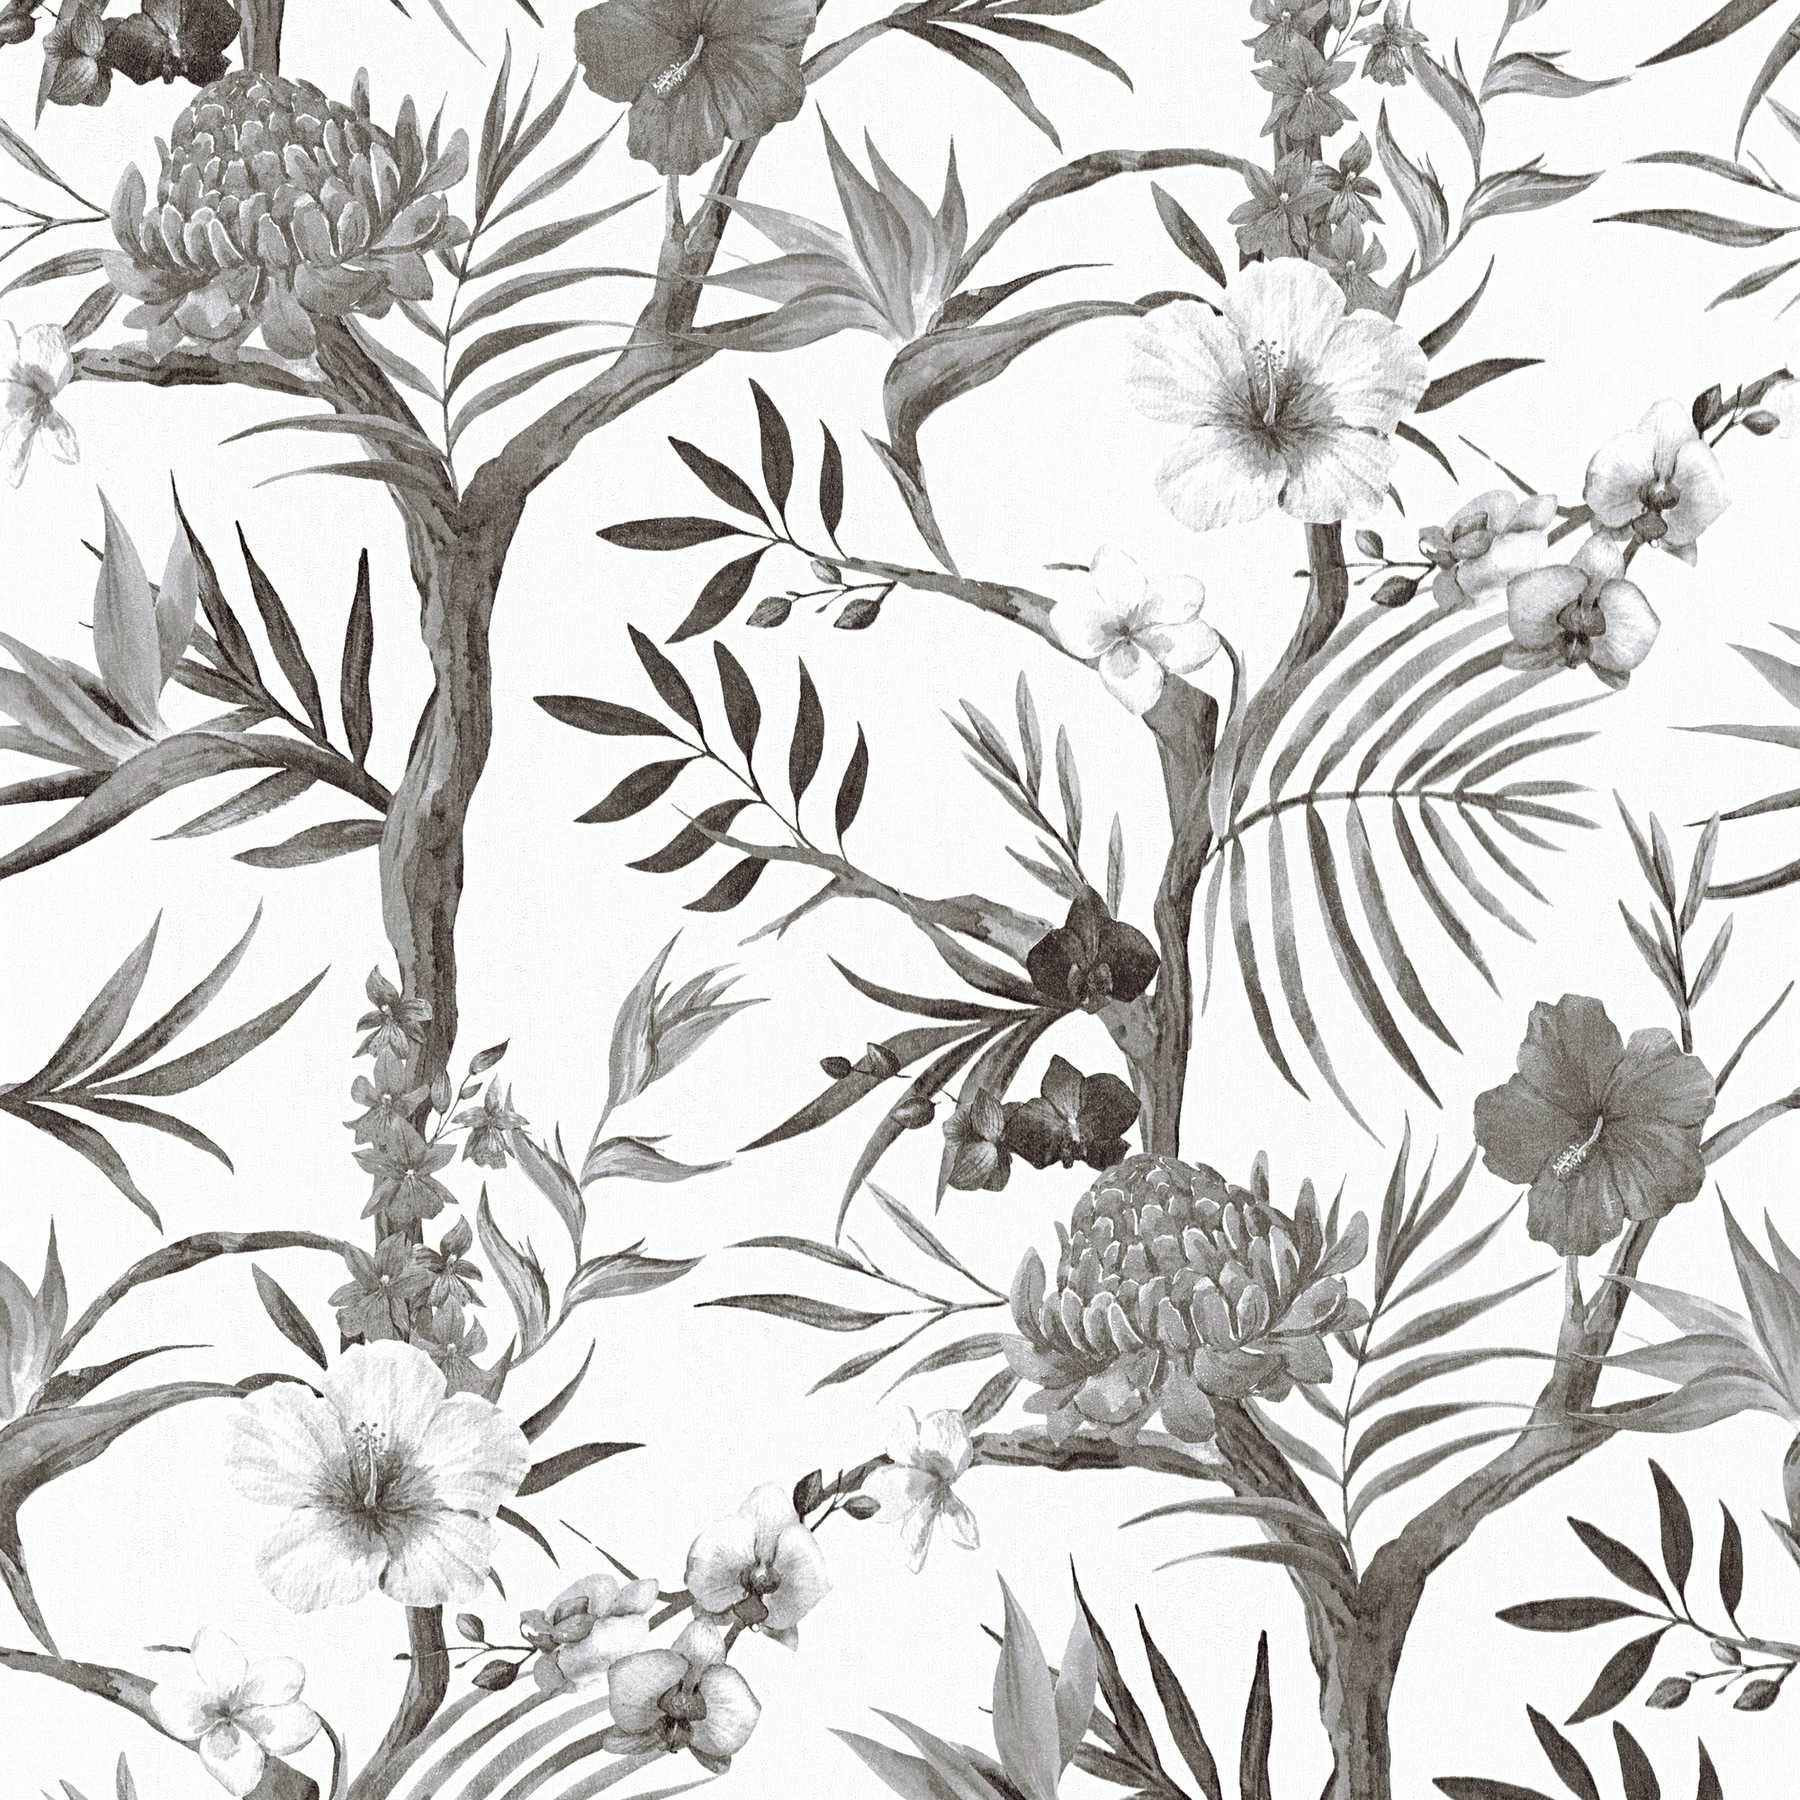 Jungle bloemen vliesbehang in subtiele kleuren - zwart, wit, grijs
